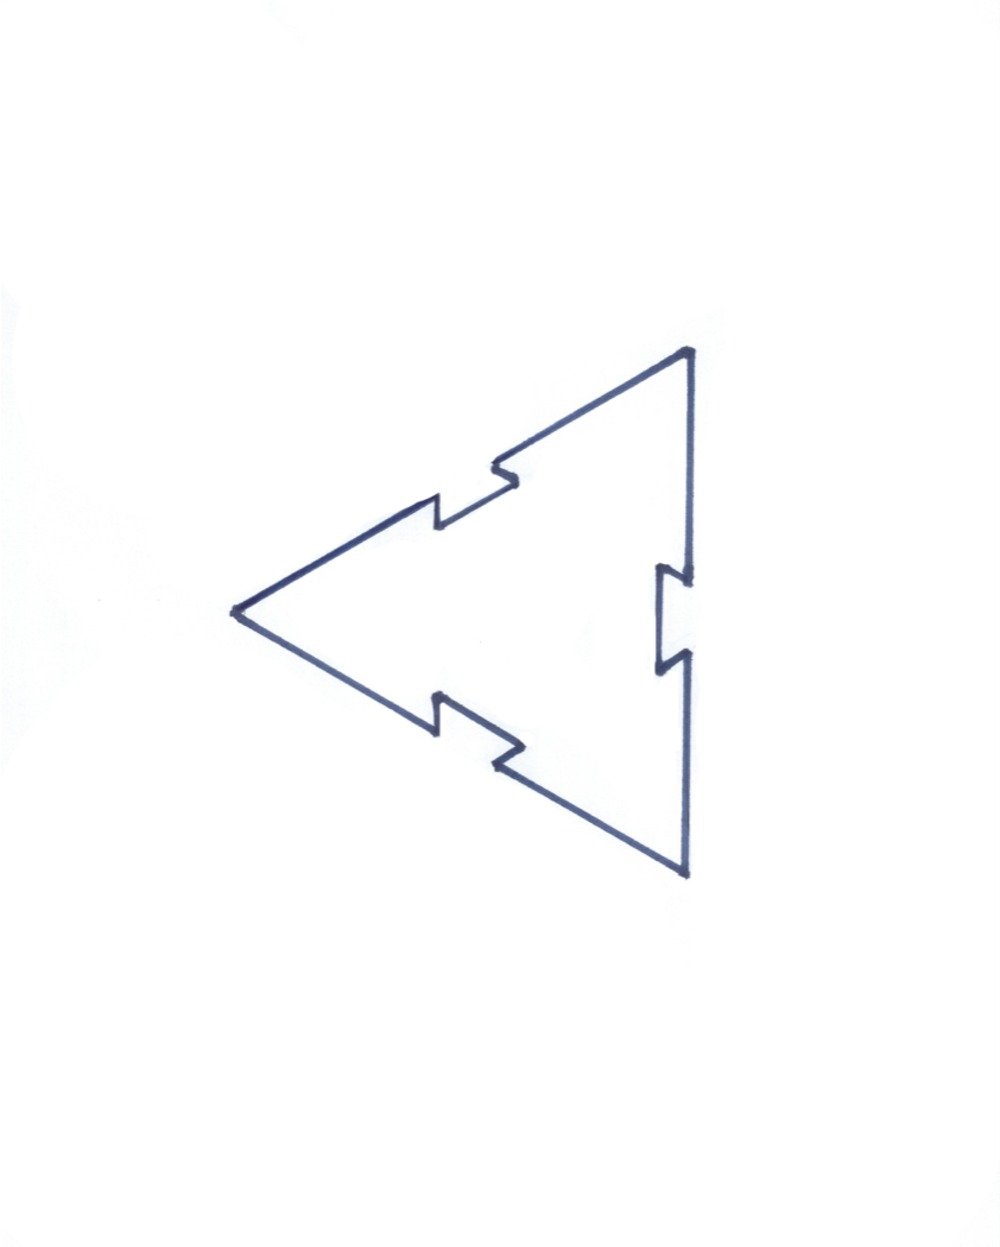 قالب مثلث لعمل النجوم دون الالتصاق بالورق